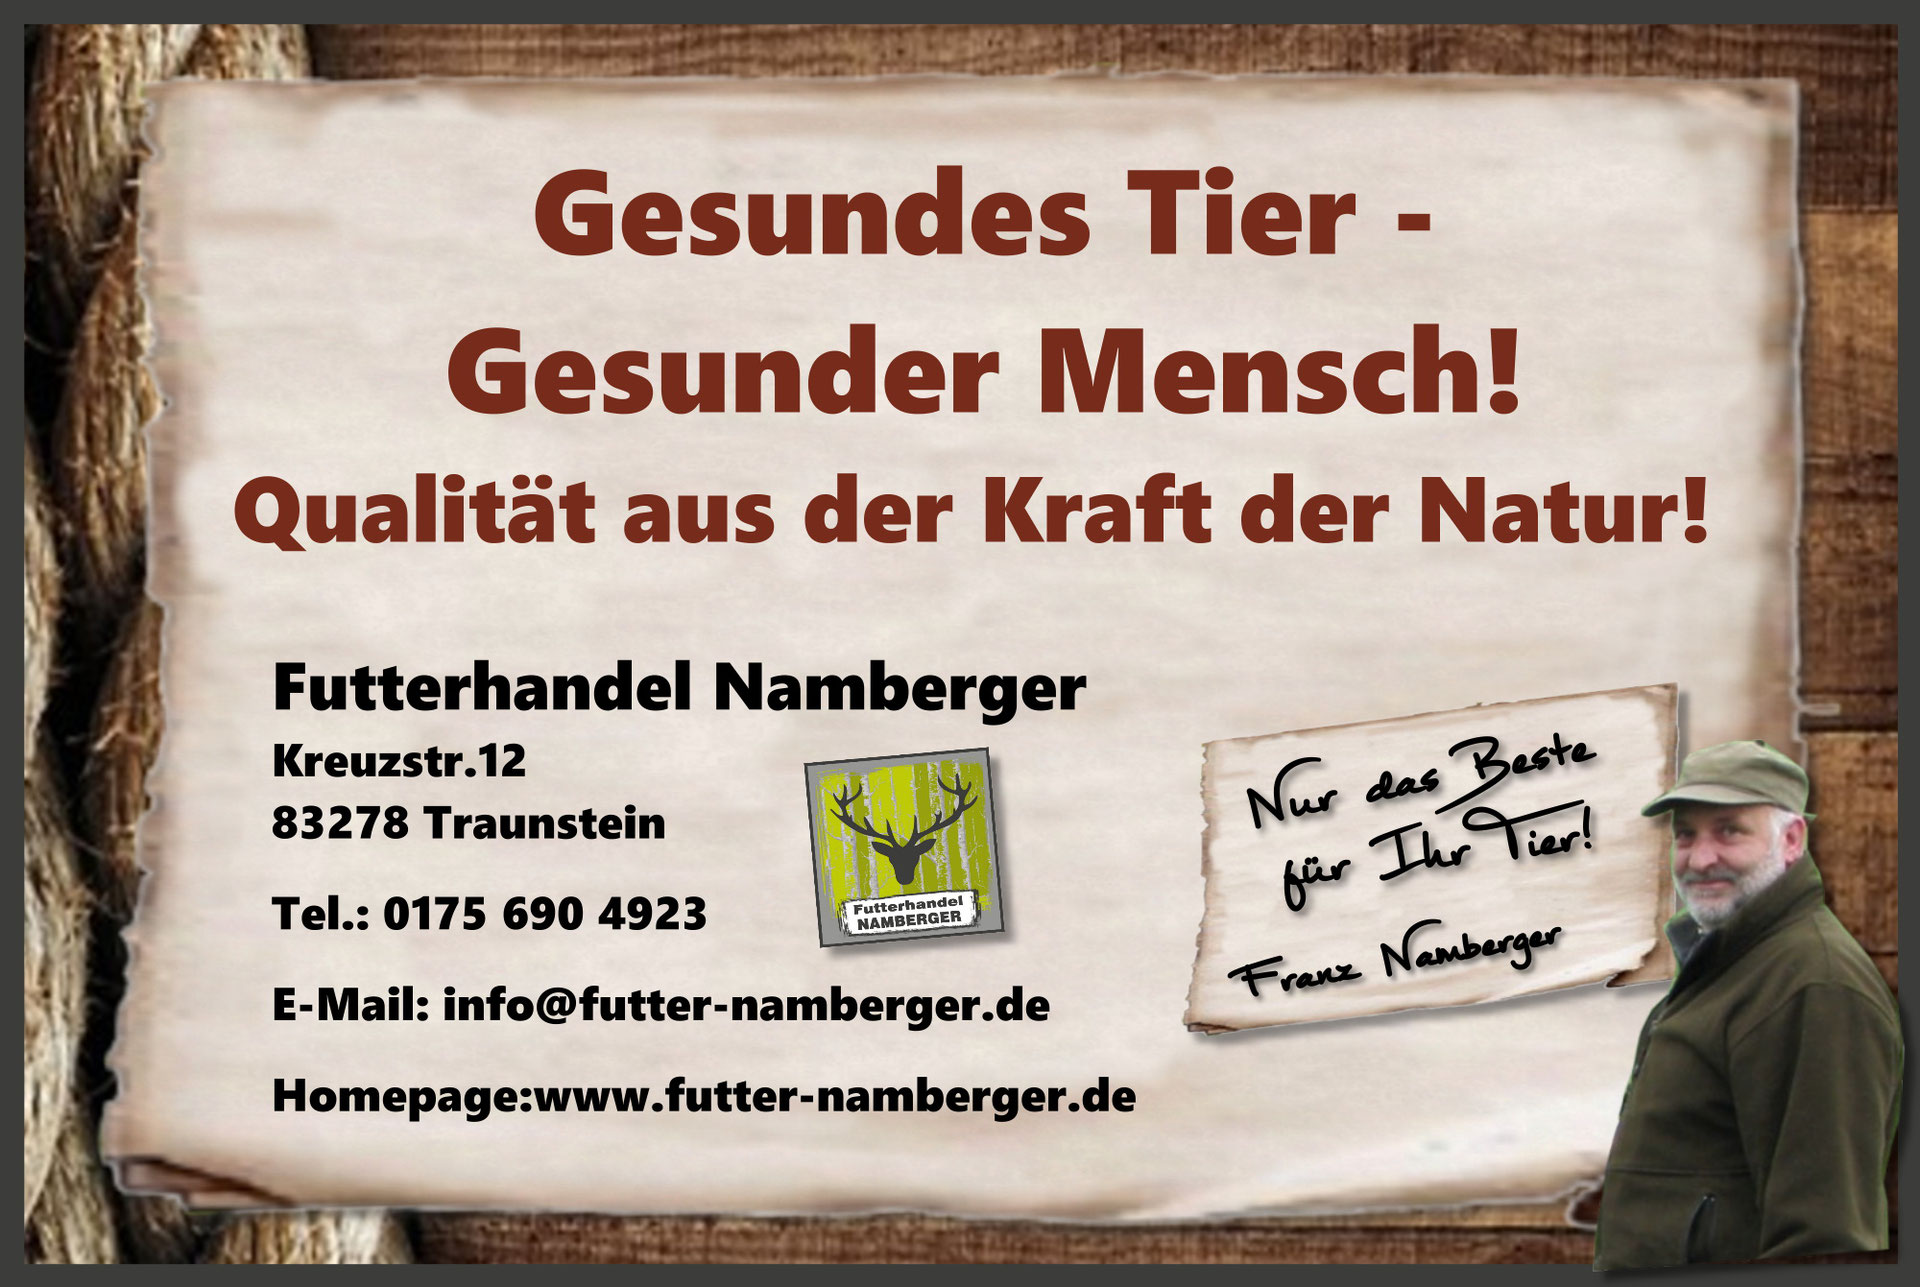 (c) Futter-namberger.de